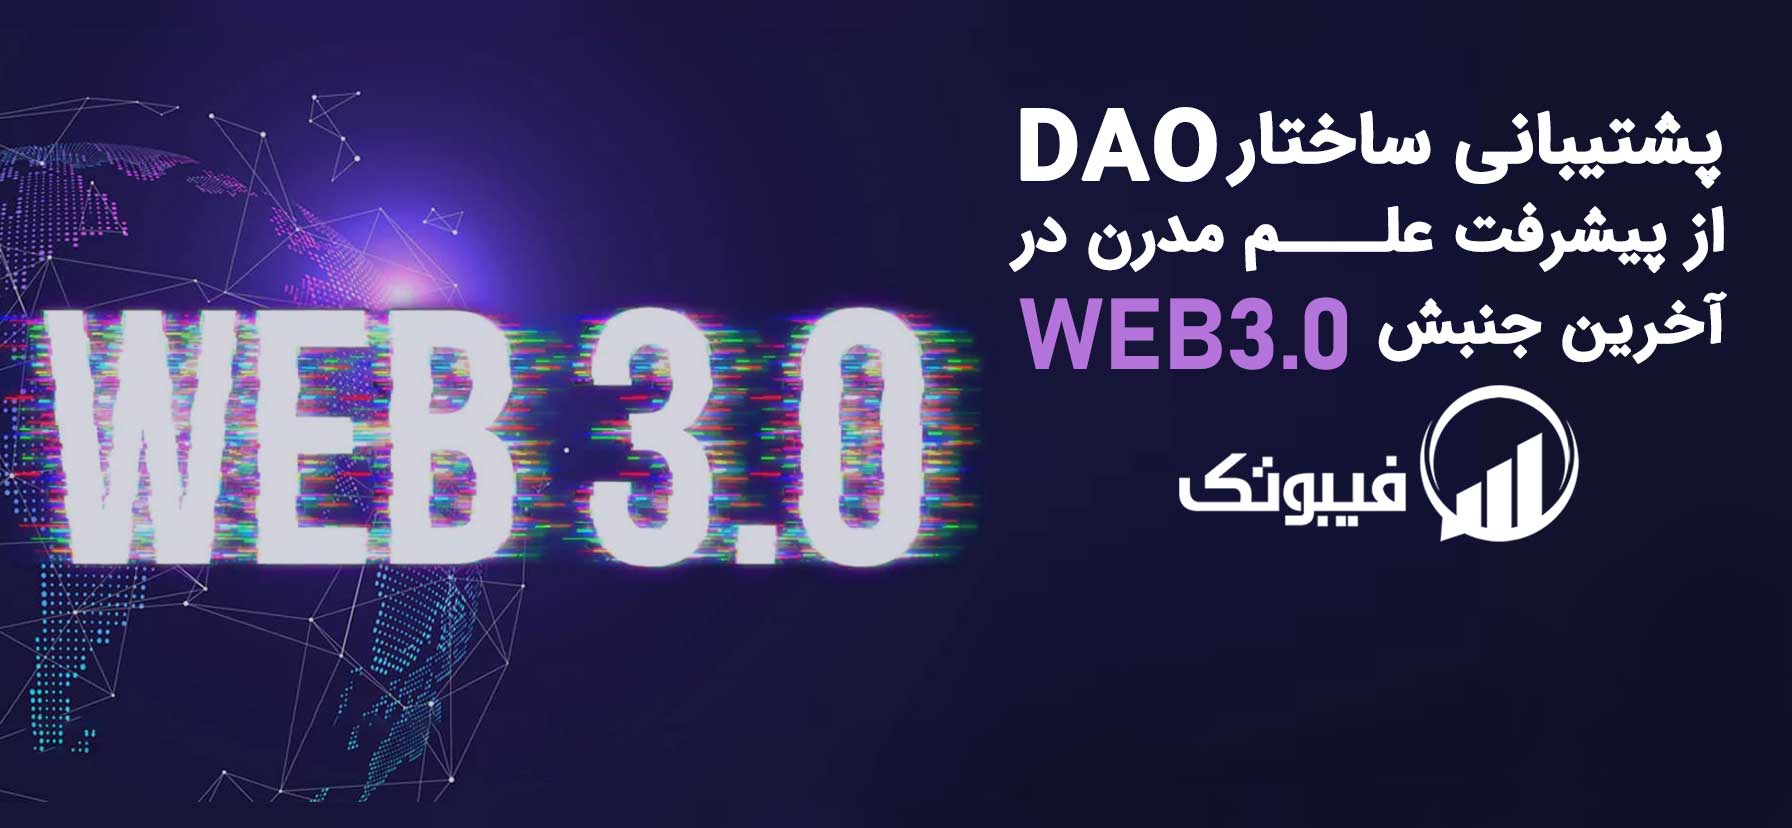 اخبار ارز دیجیتال, پشتیبانی ساختار DAO از پیشرفت علم مدرن در آخرین جنبش Web3